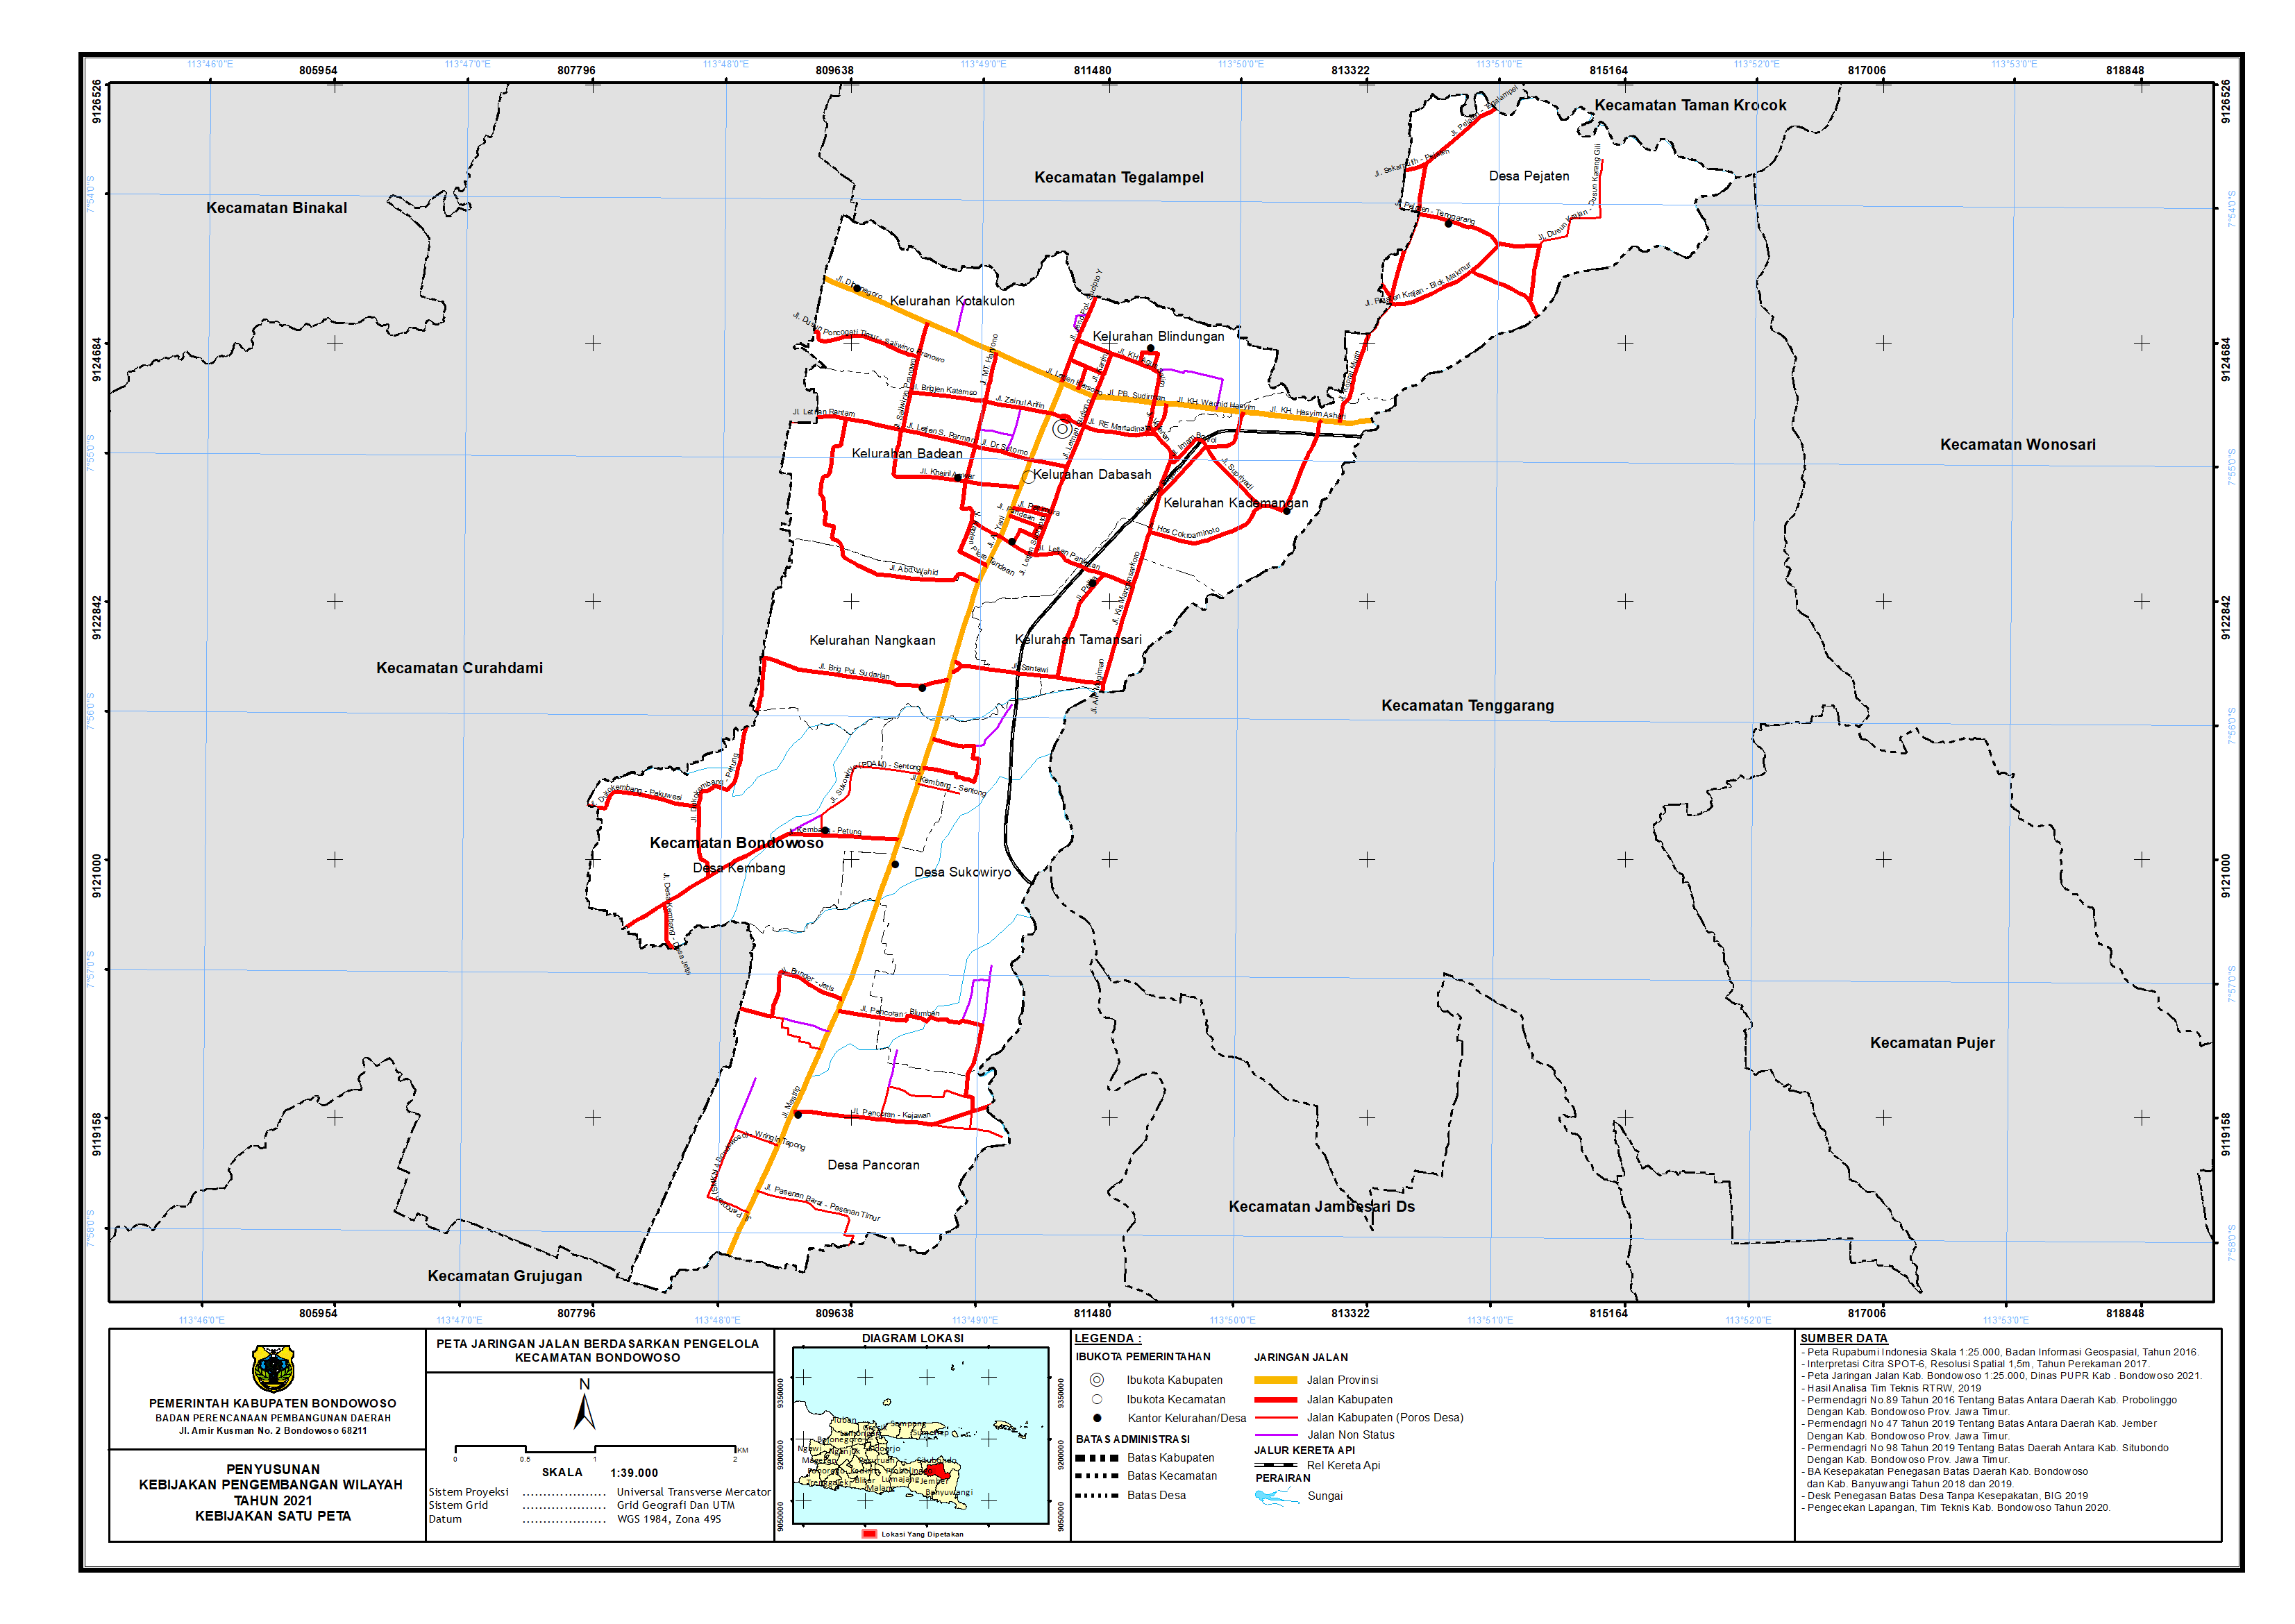 Peta Jaringan Jalan Berdasarkan Pengelola Kecamatan Bondowoso.png